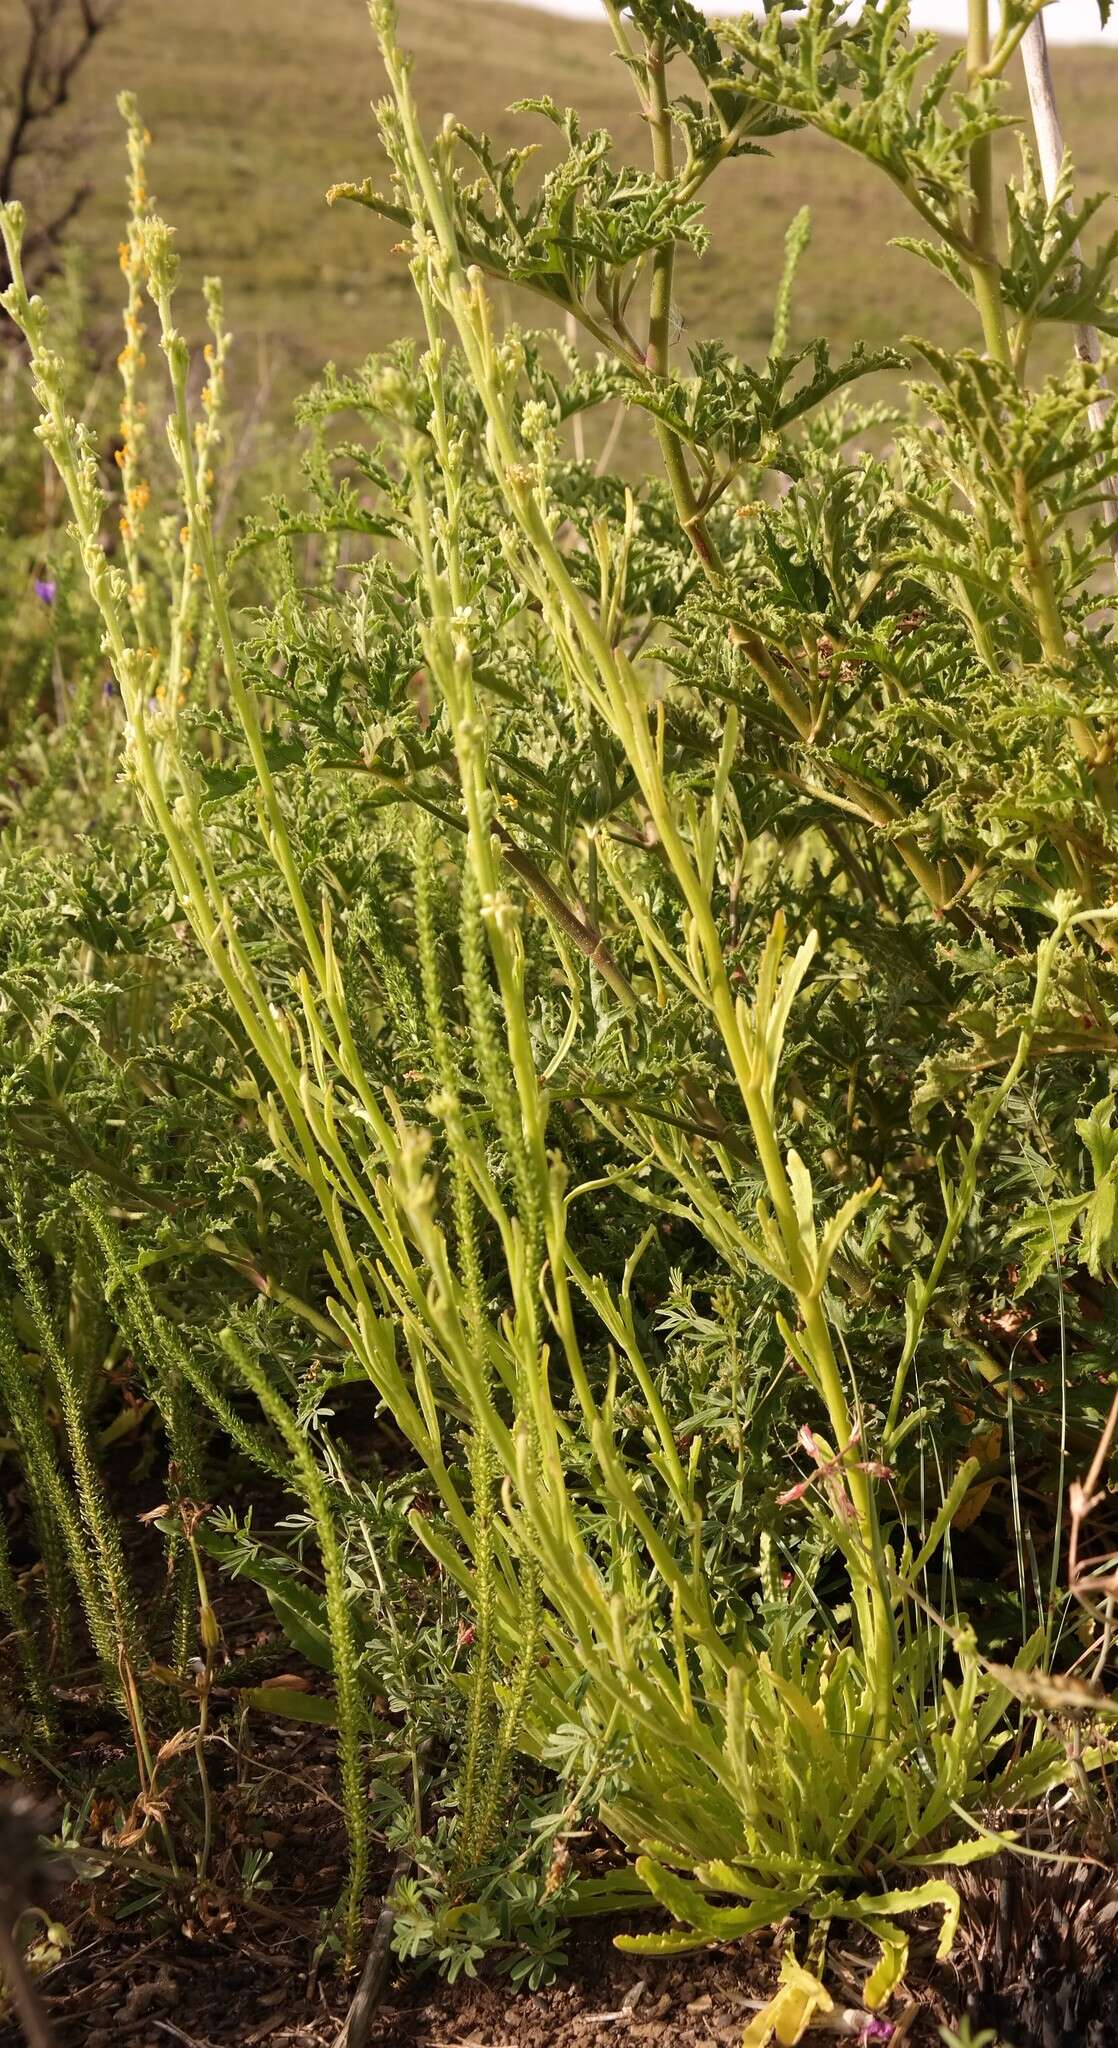 Image of Manulea crassifolia subsp. crassifolia